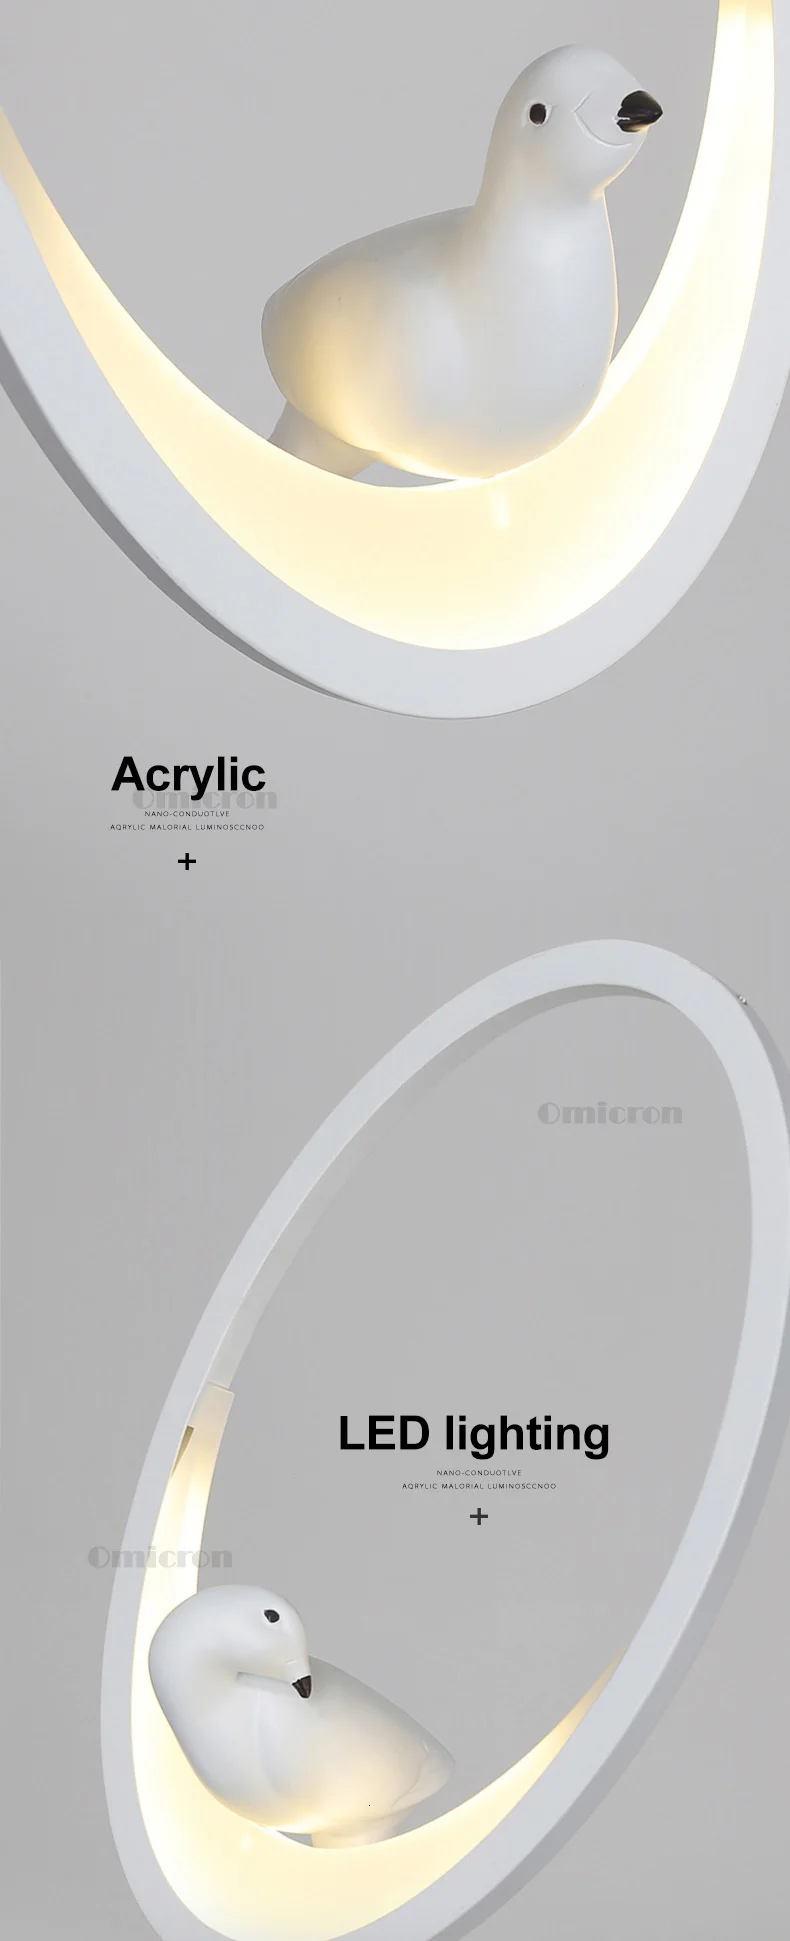 Креативная Скандинавская лампа, современные светодиодные подвесные светильники для столовой, гостиной, кухни, подвесные светильники, белый/черный подвесной светильник